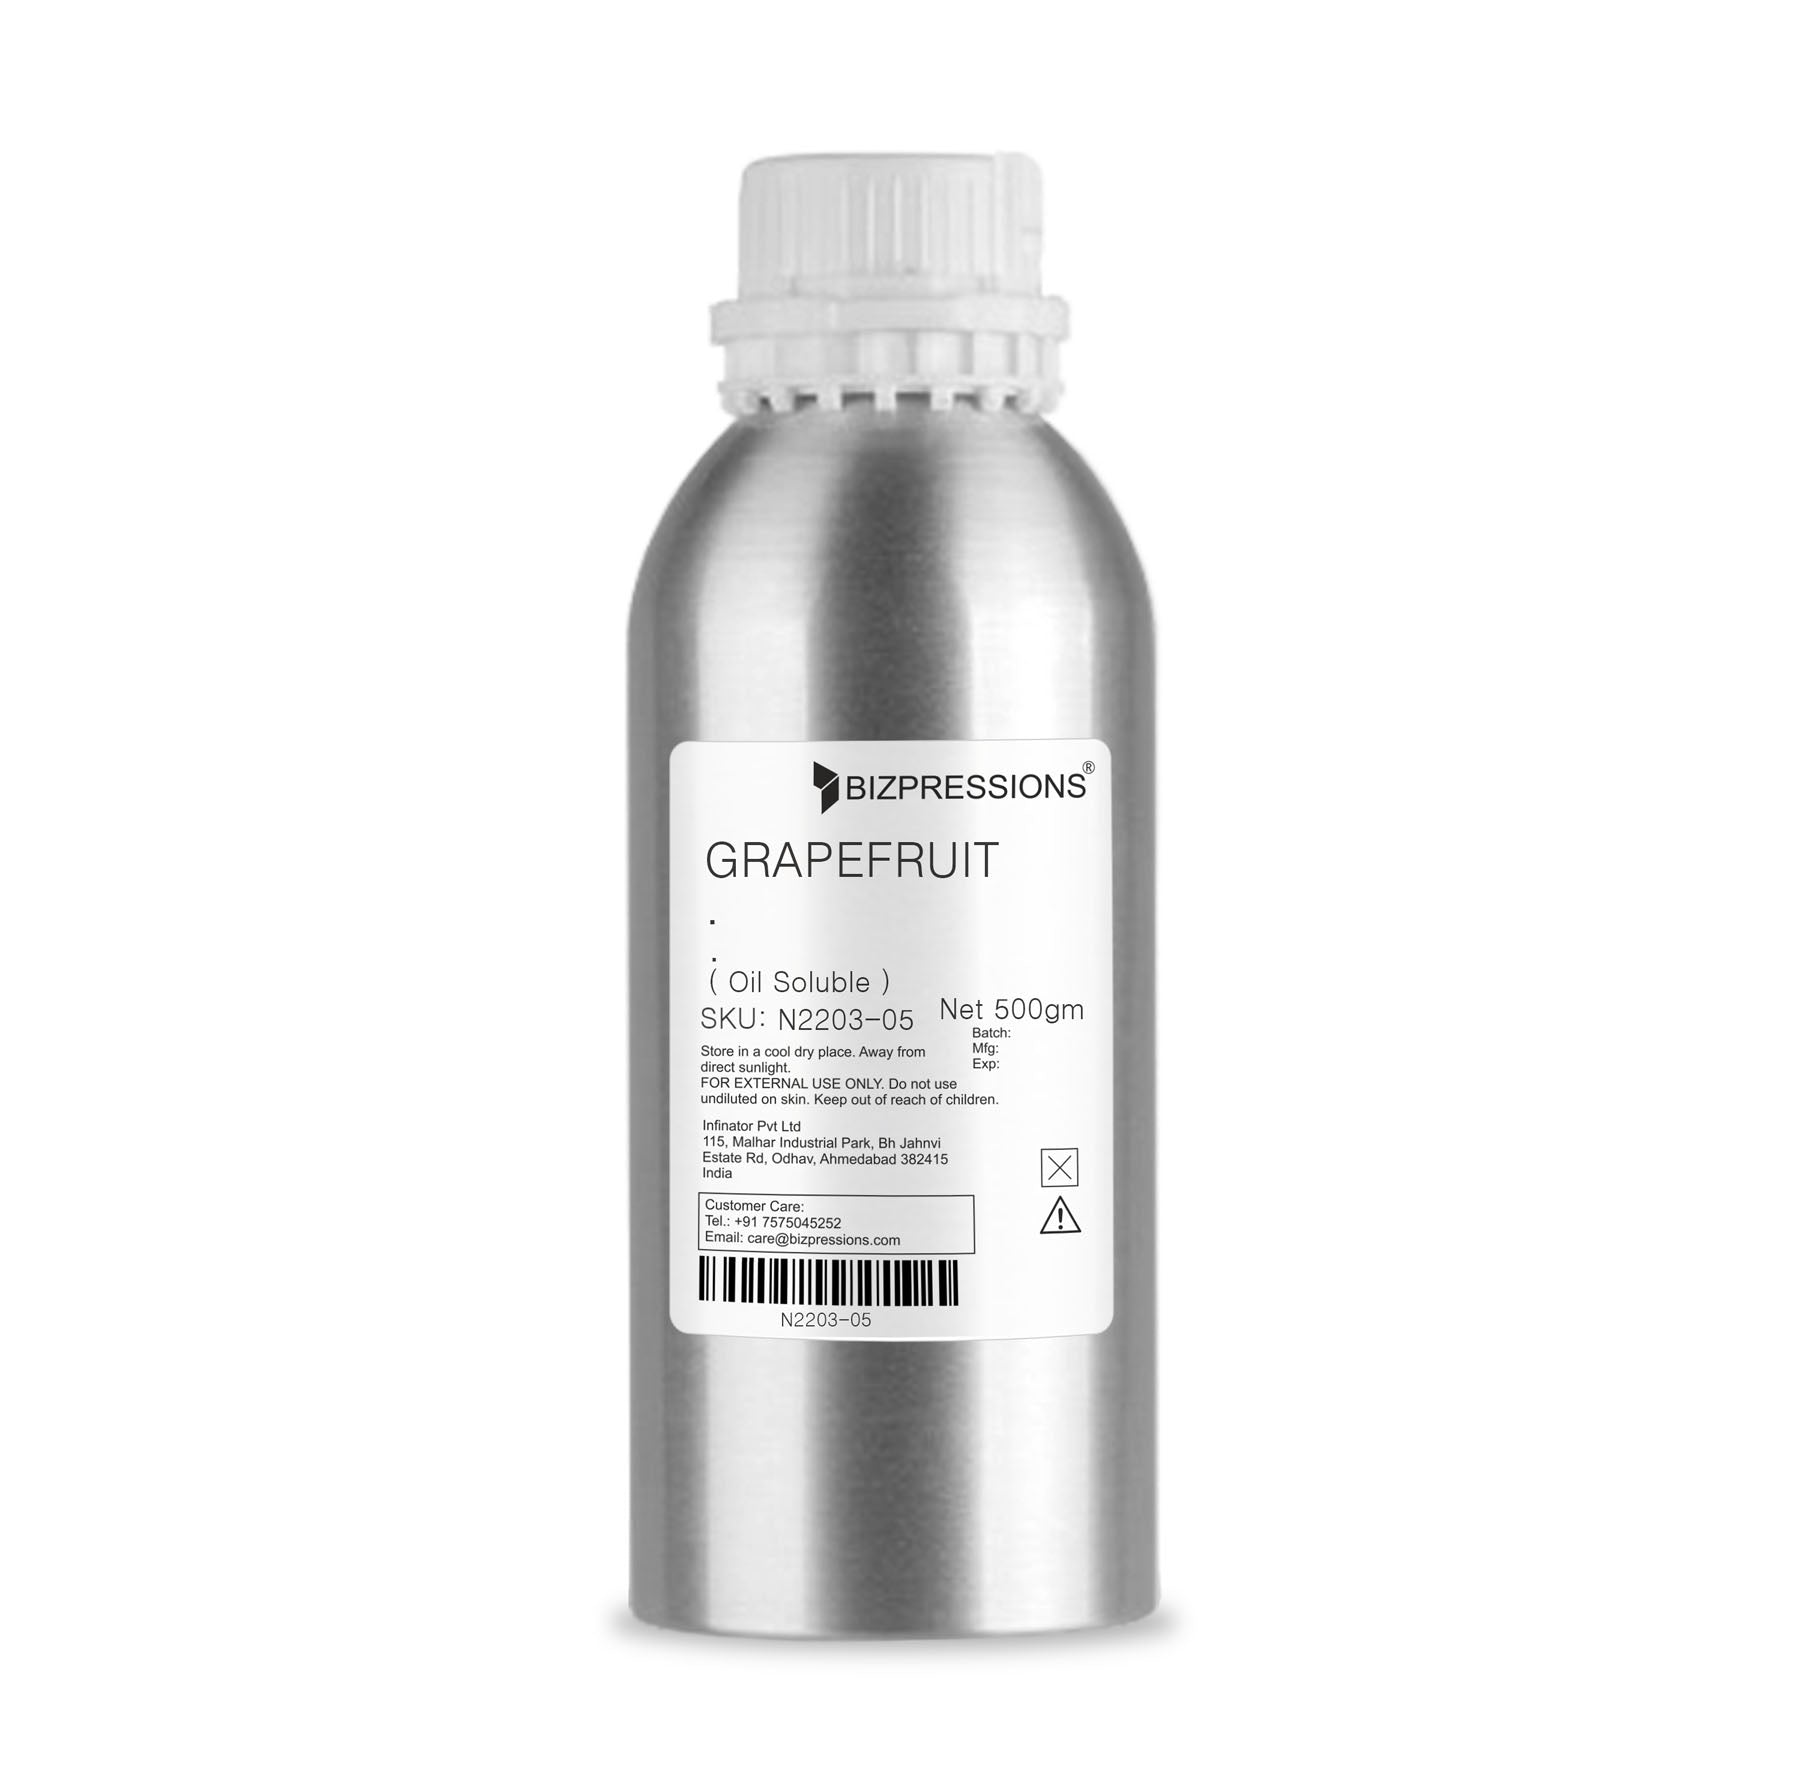 GRAPEFRUIT - Fragrance ( Oil Soluble ) - 500 gm